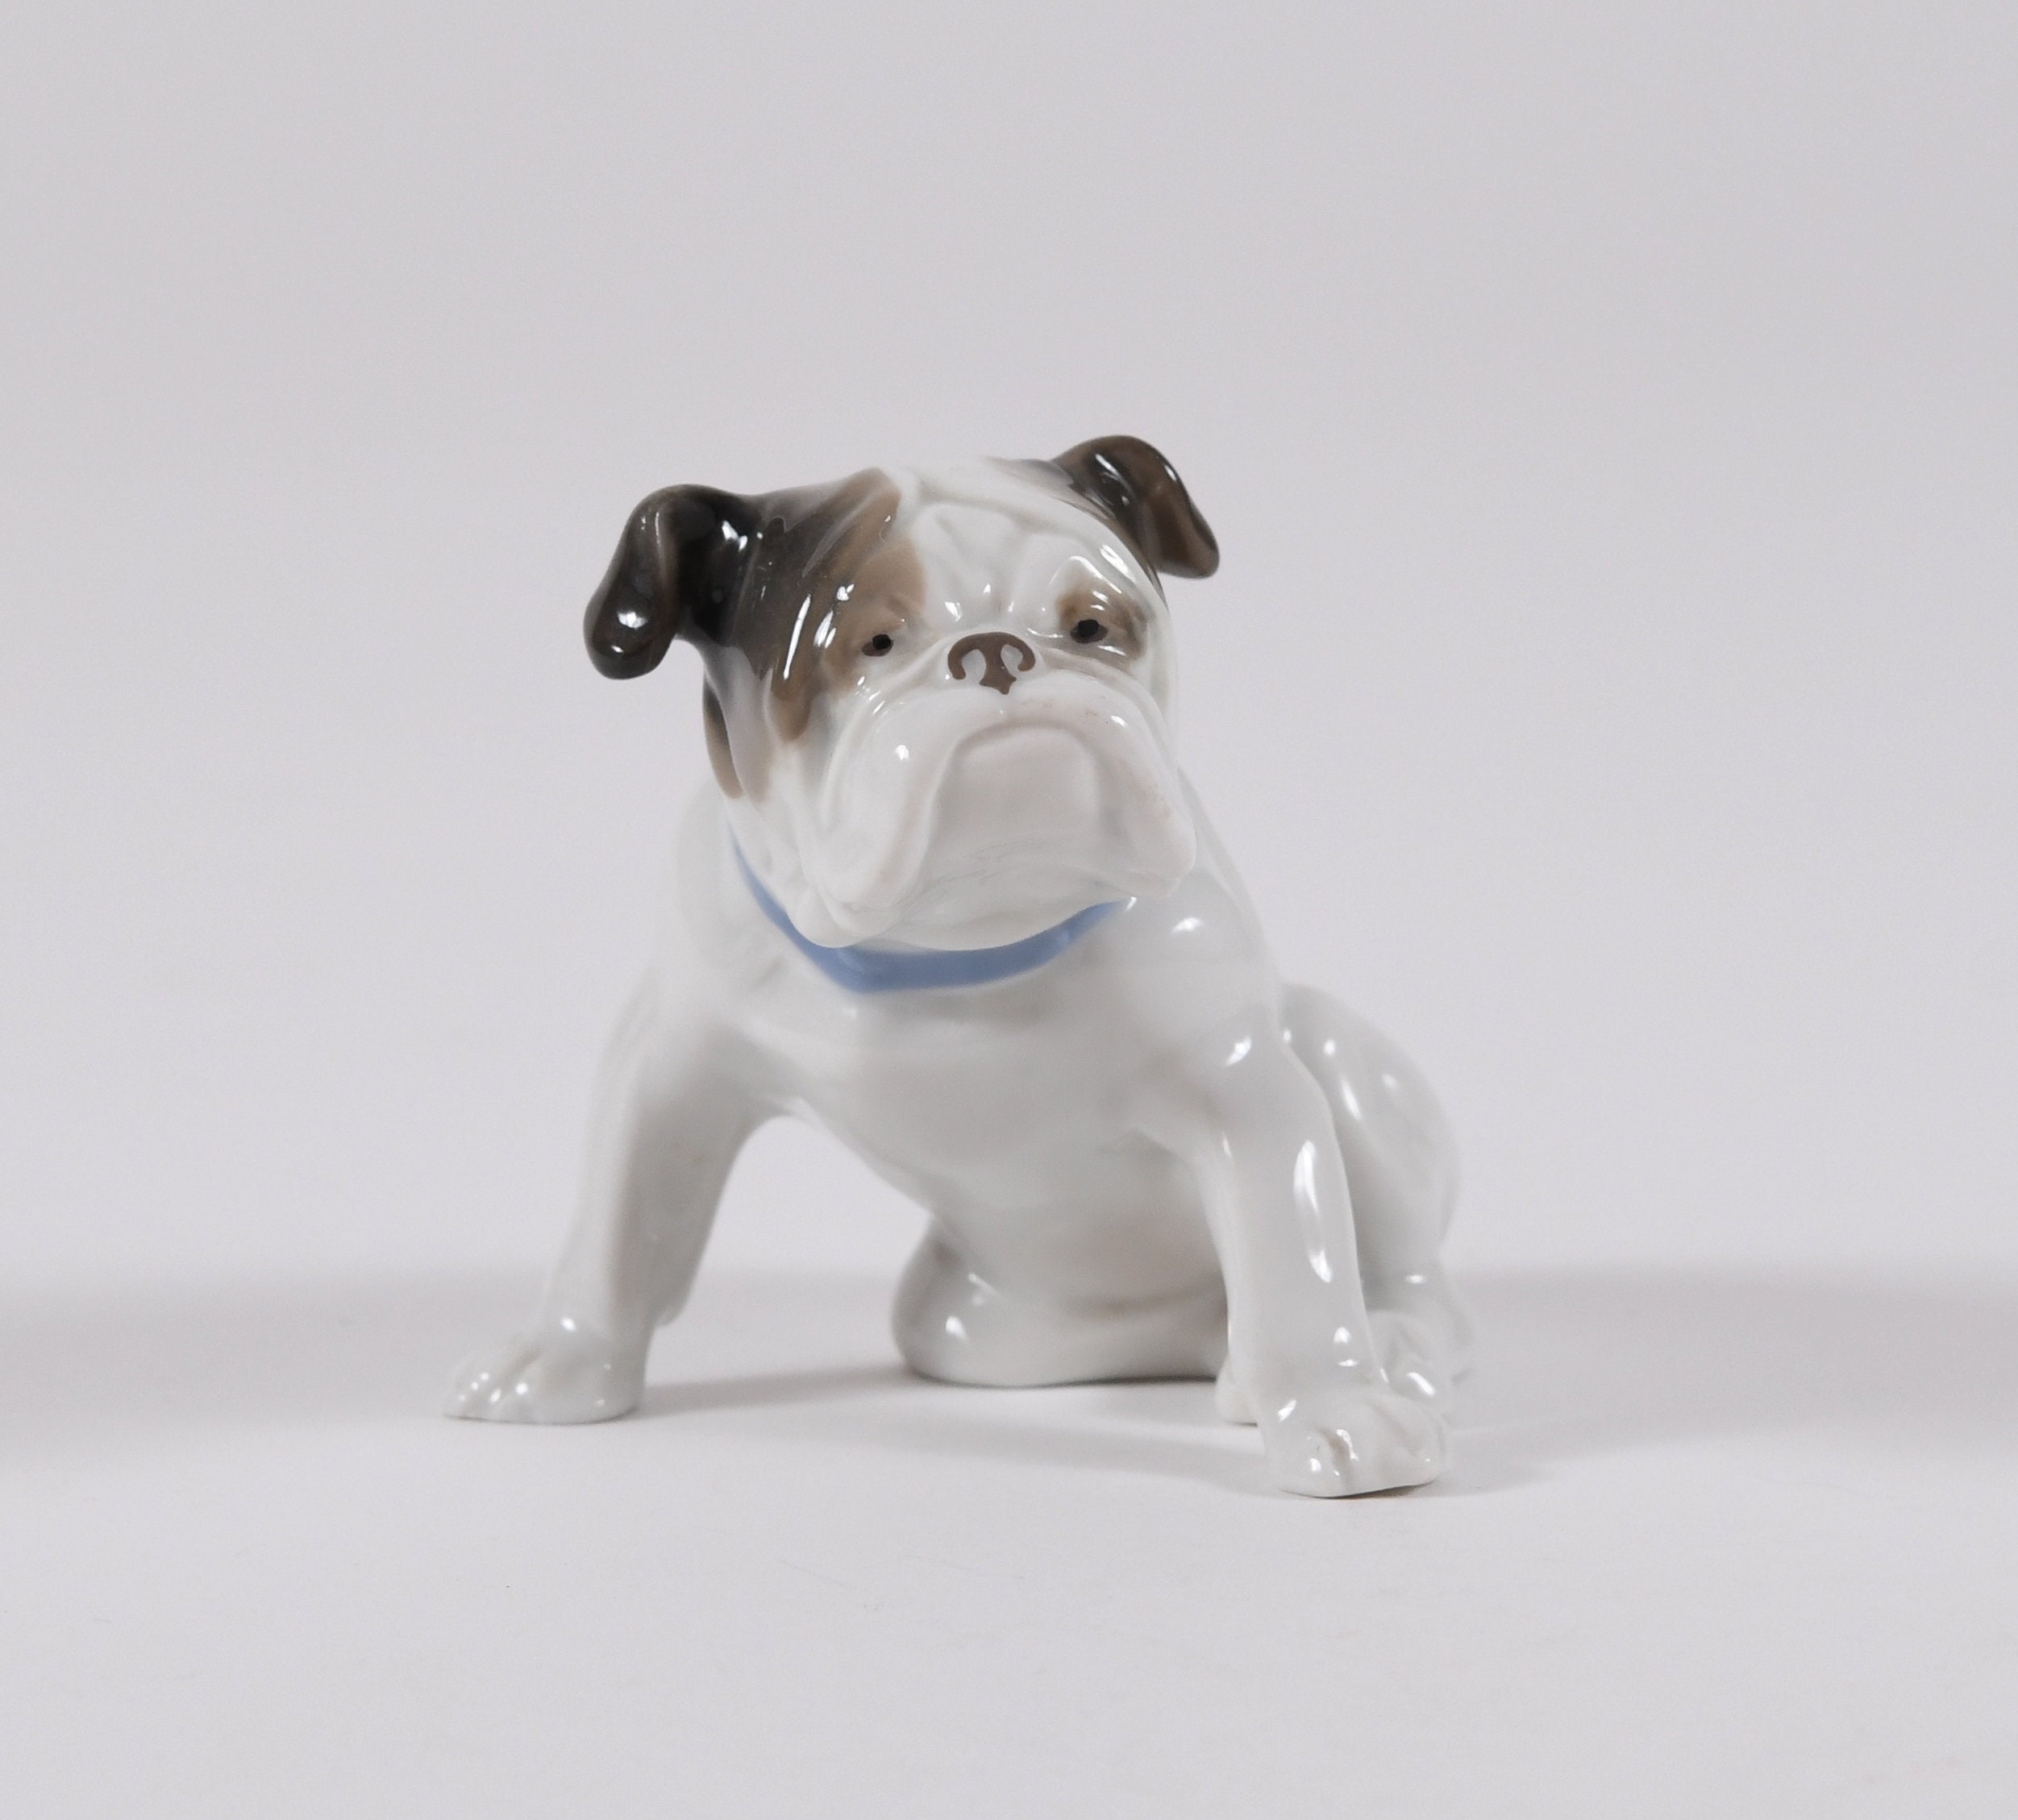  Französische Bulldogge Deko, Coole Bulldogge Figur Statue  Schlüsselschale mit Storage Tray, Big Mouth Harz Hunde Skulptur, Modern  Bulldog Sculpture für Flur Wohnzimmer Süßigkeiten Aufbewahrung ( Color